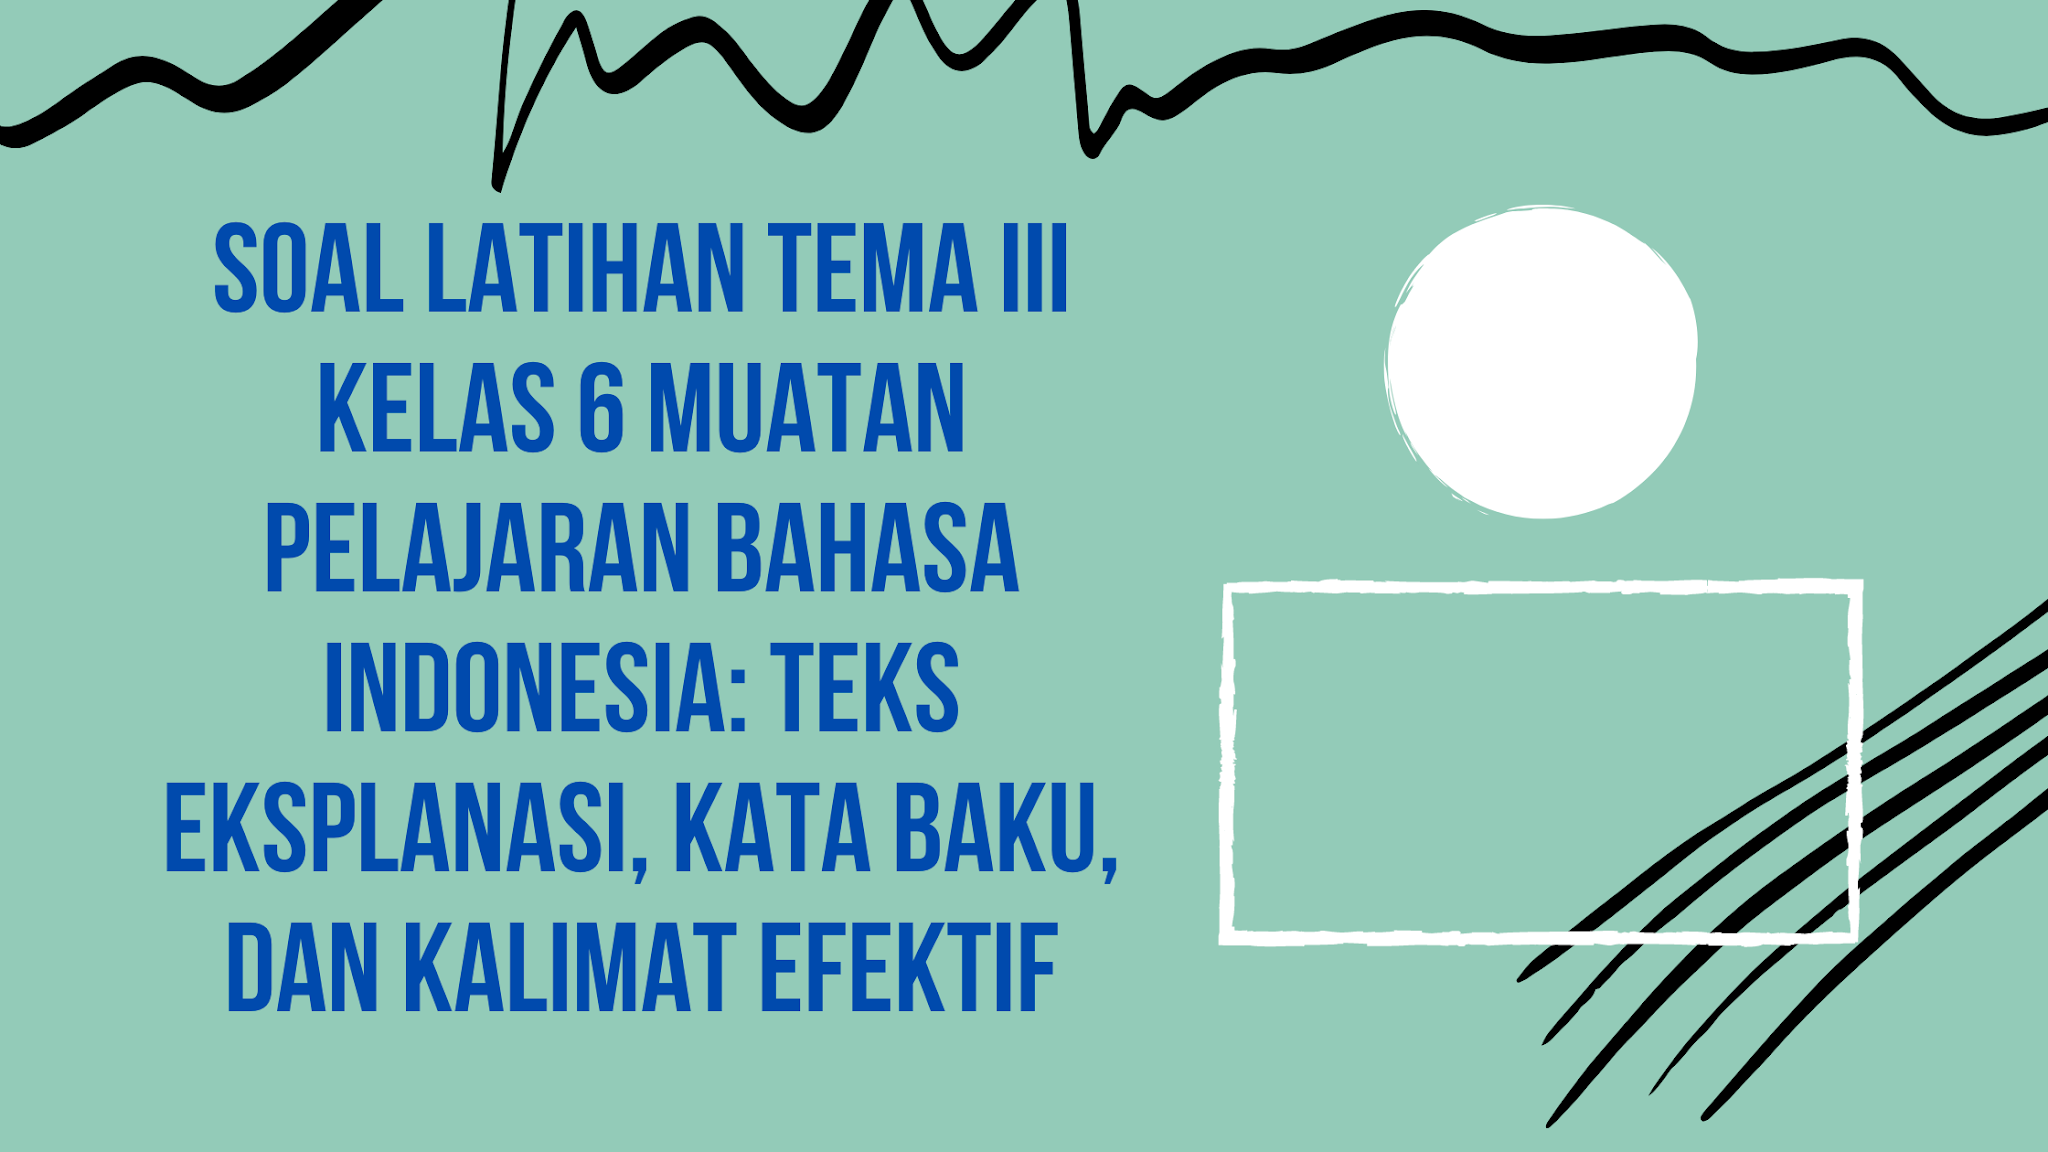 Soal Latihan Tema Iii Kelas 6 Muatan Pelajaran Bahasa Indonesia Teks Eksplanasi Kata Baku Dan Kalimat Efektif Dapurimajinasi